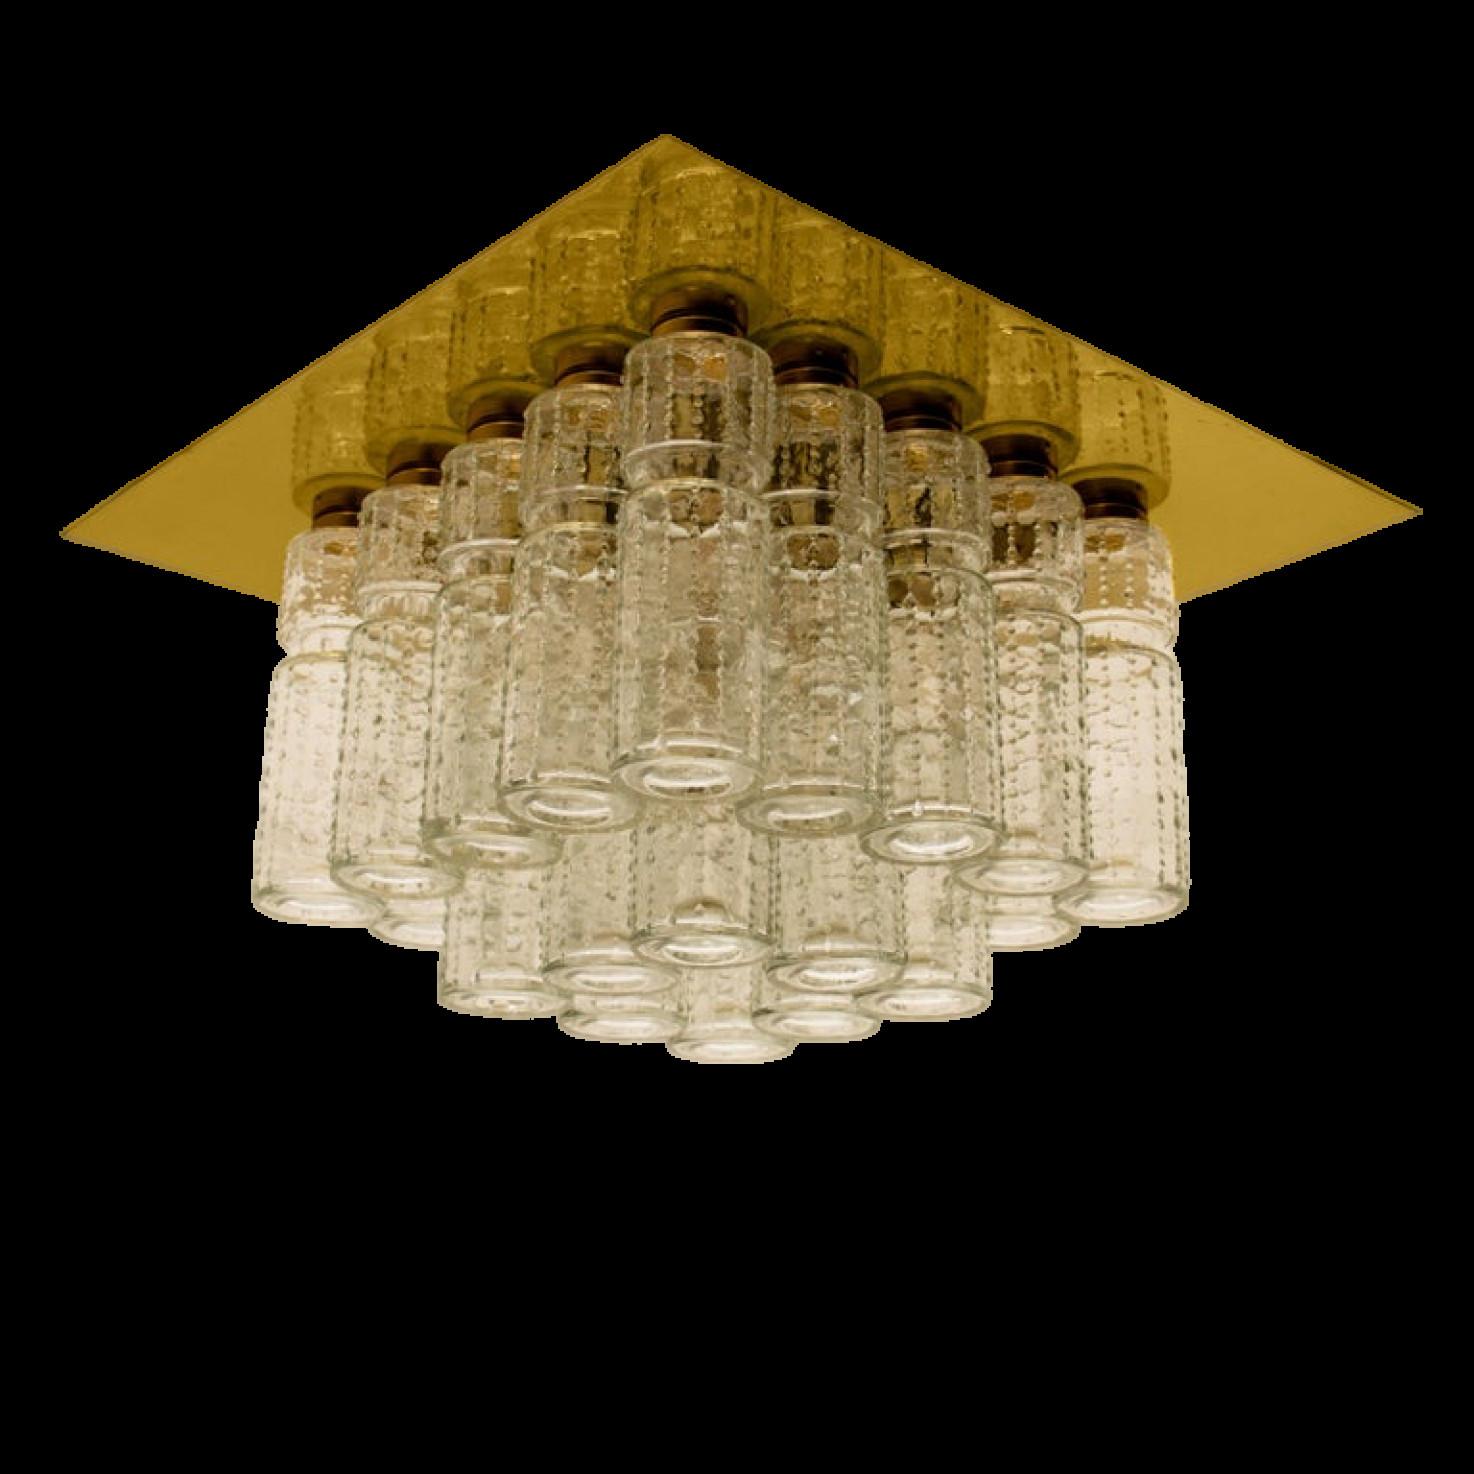 L'un des six lustres encastrés étonnants avec 24 prismes suspendus en verre creux texturé soufflé à la main et montés sur un cadre en laiton. Fabriqué par Glashütte Limburg en Allemagne, conçu par Boris Tabacoff dans les années 1970. Luminaires haut